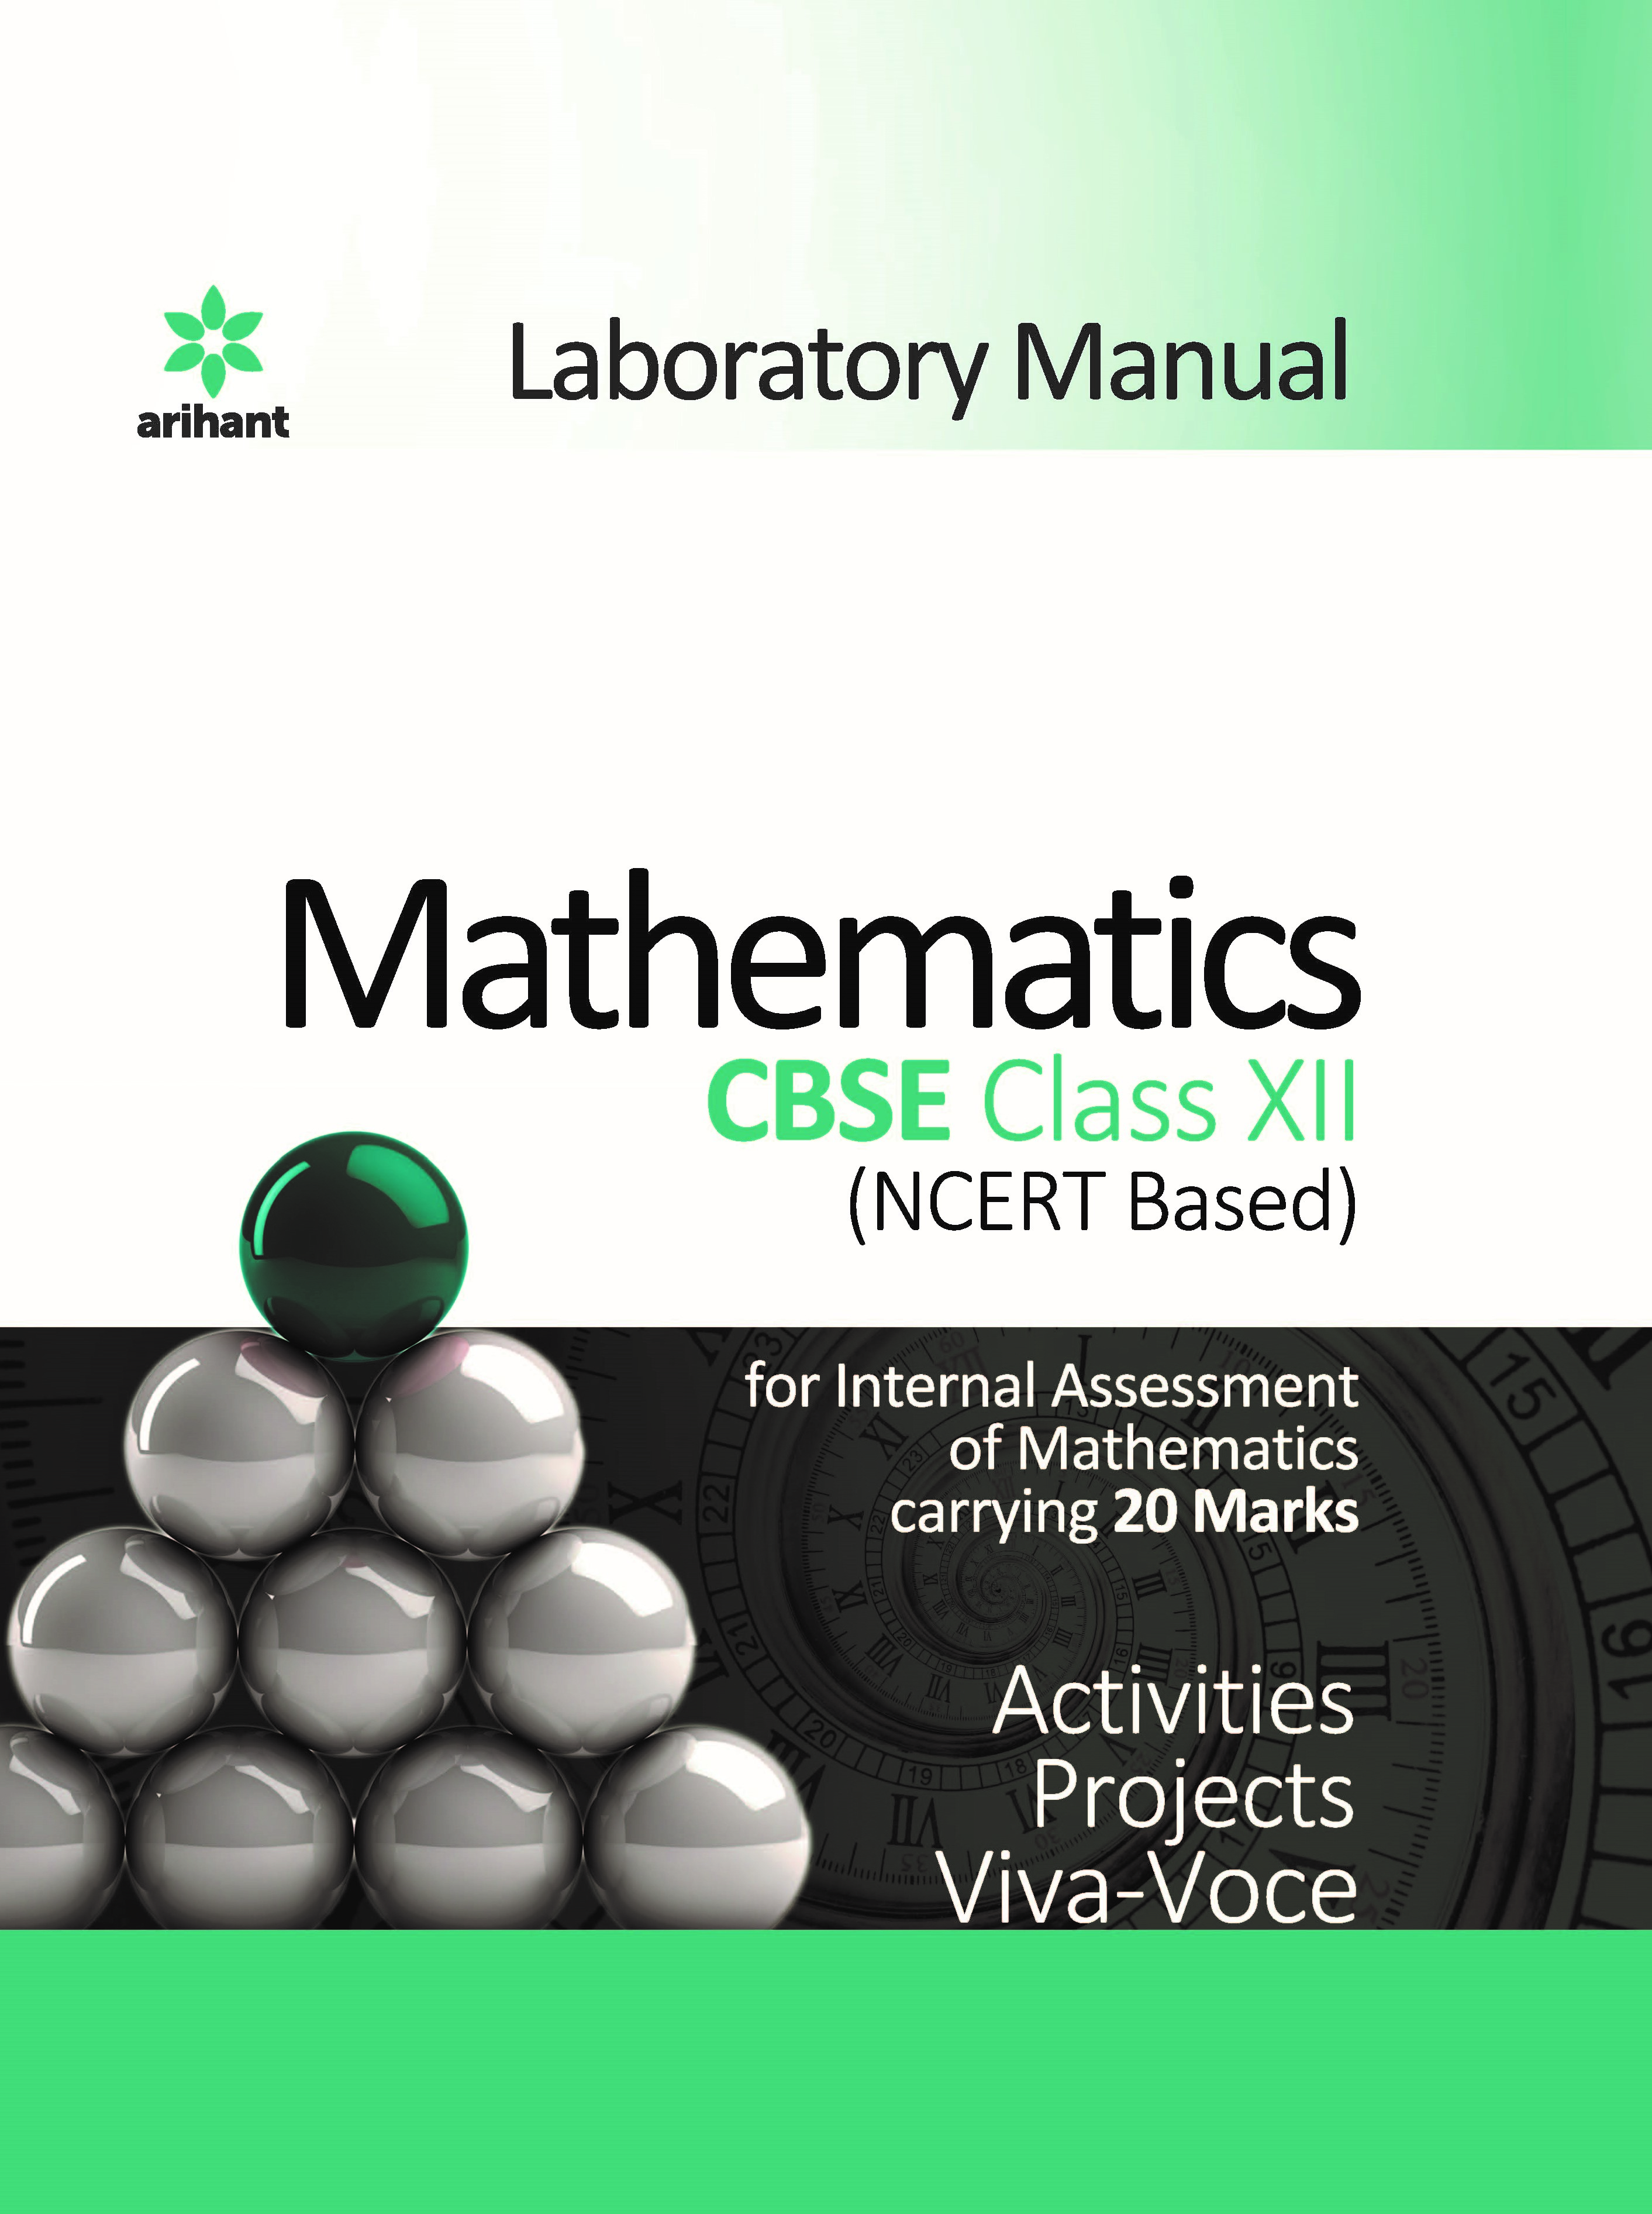 Laboratory Manual Mathematics CBSE class 12 2019-2020